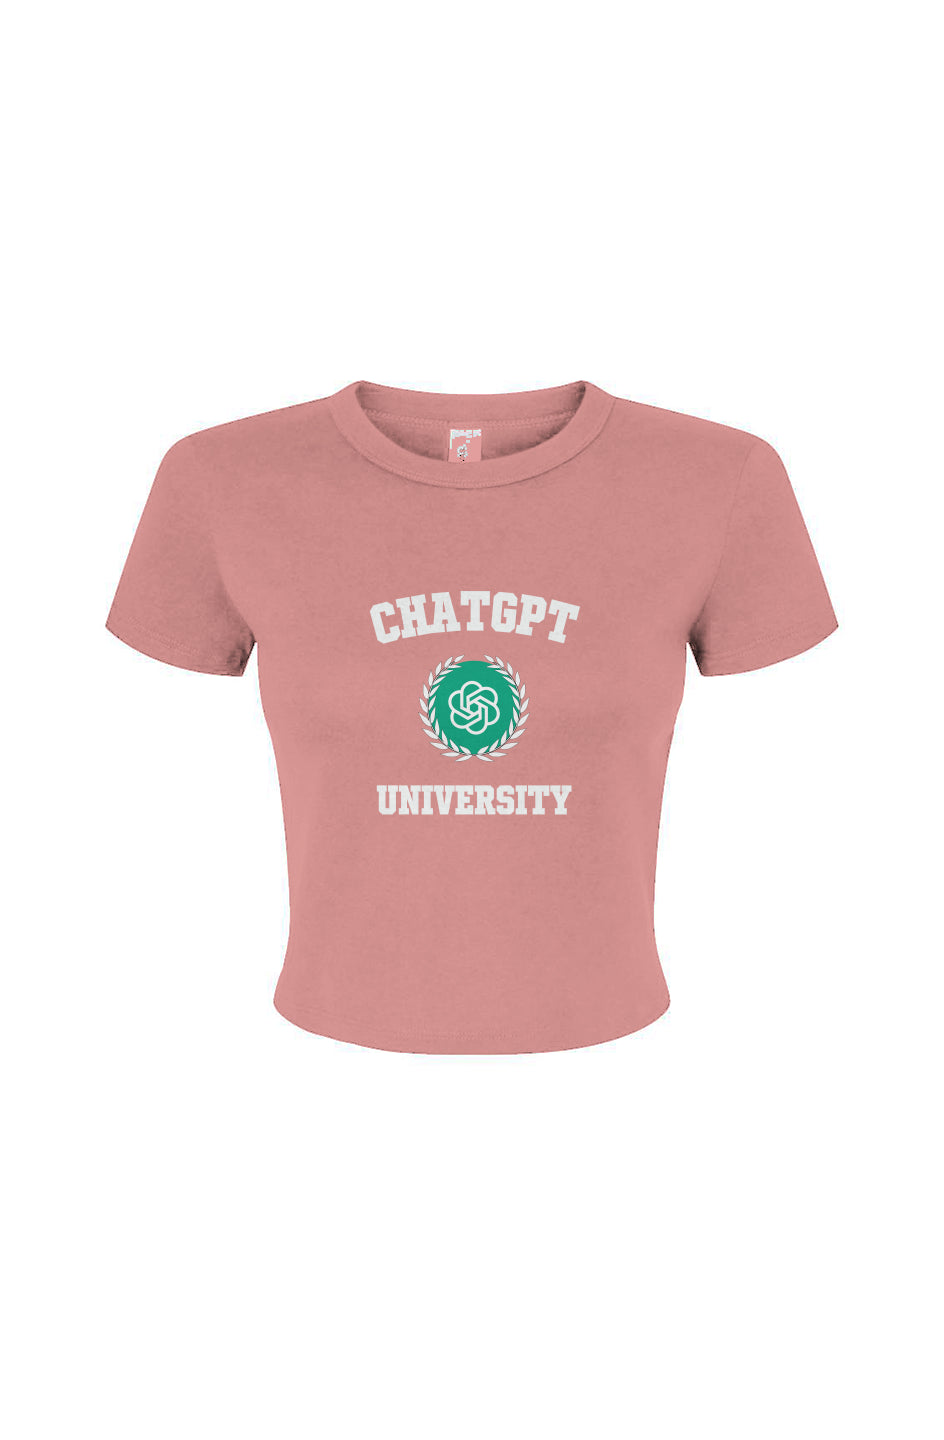 "ChatGPT University" - Baby tee